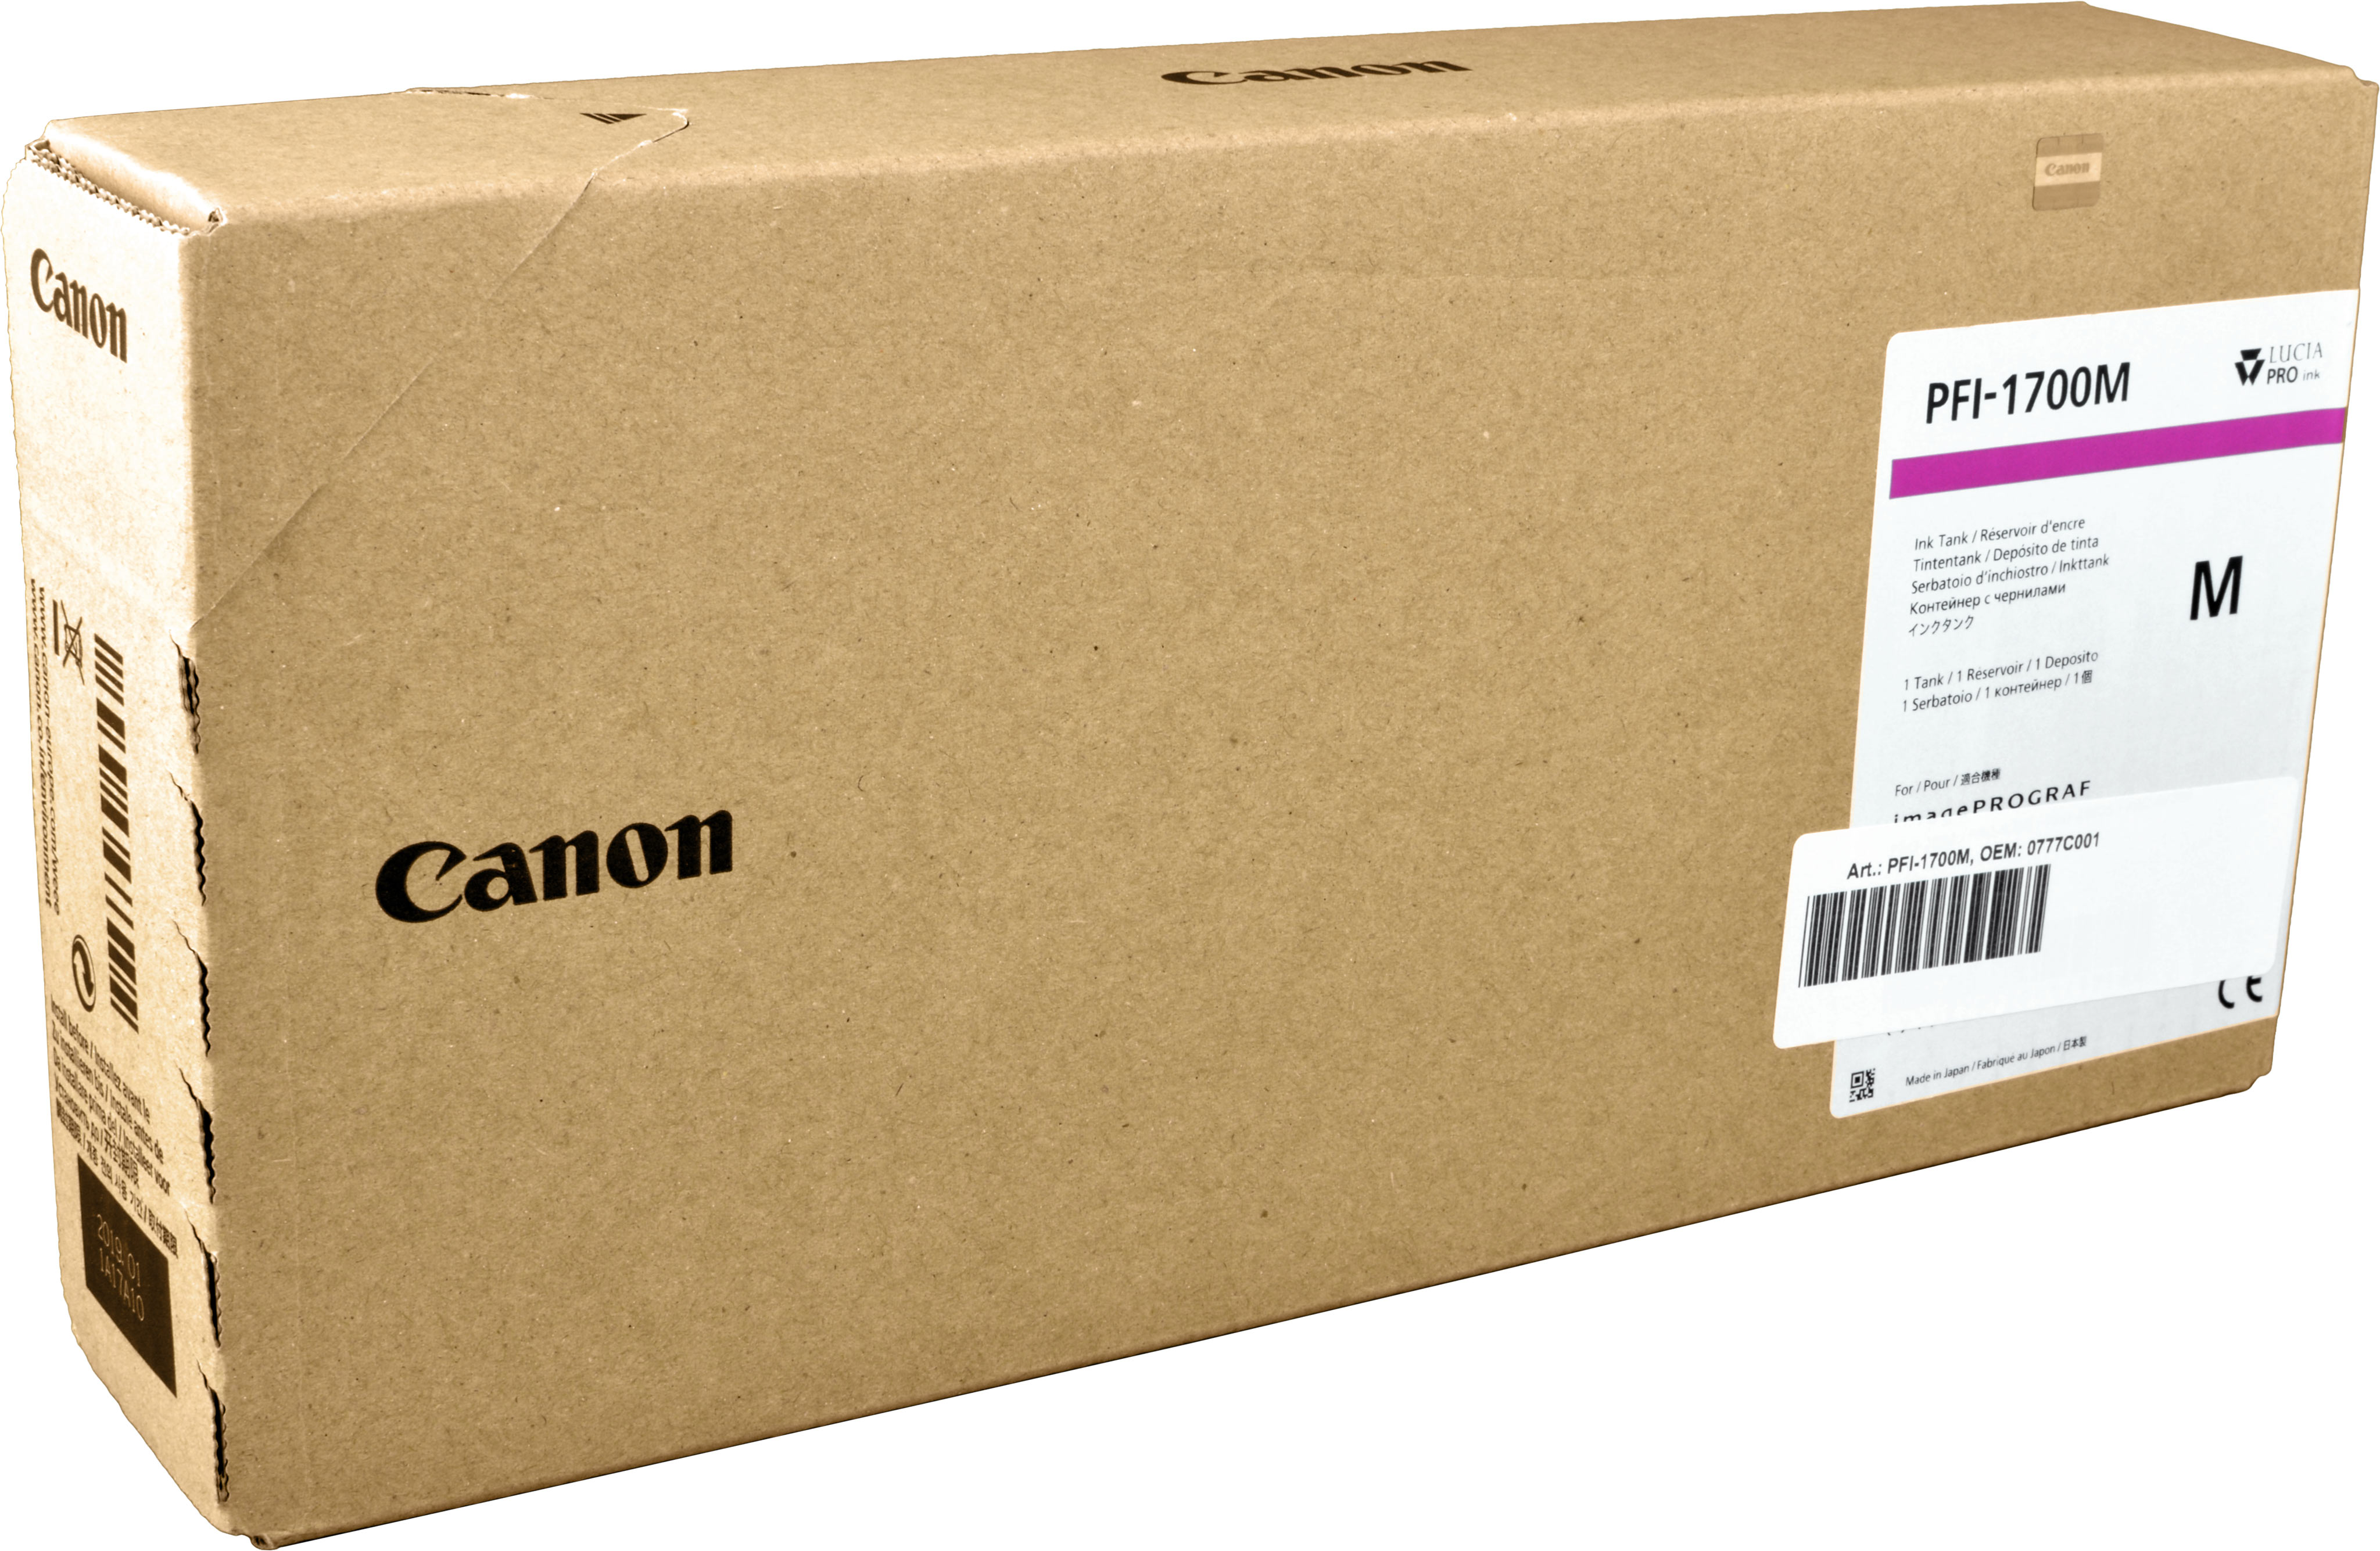 Canon Tinte 0777C001  PFI-1700M  magenta